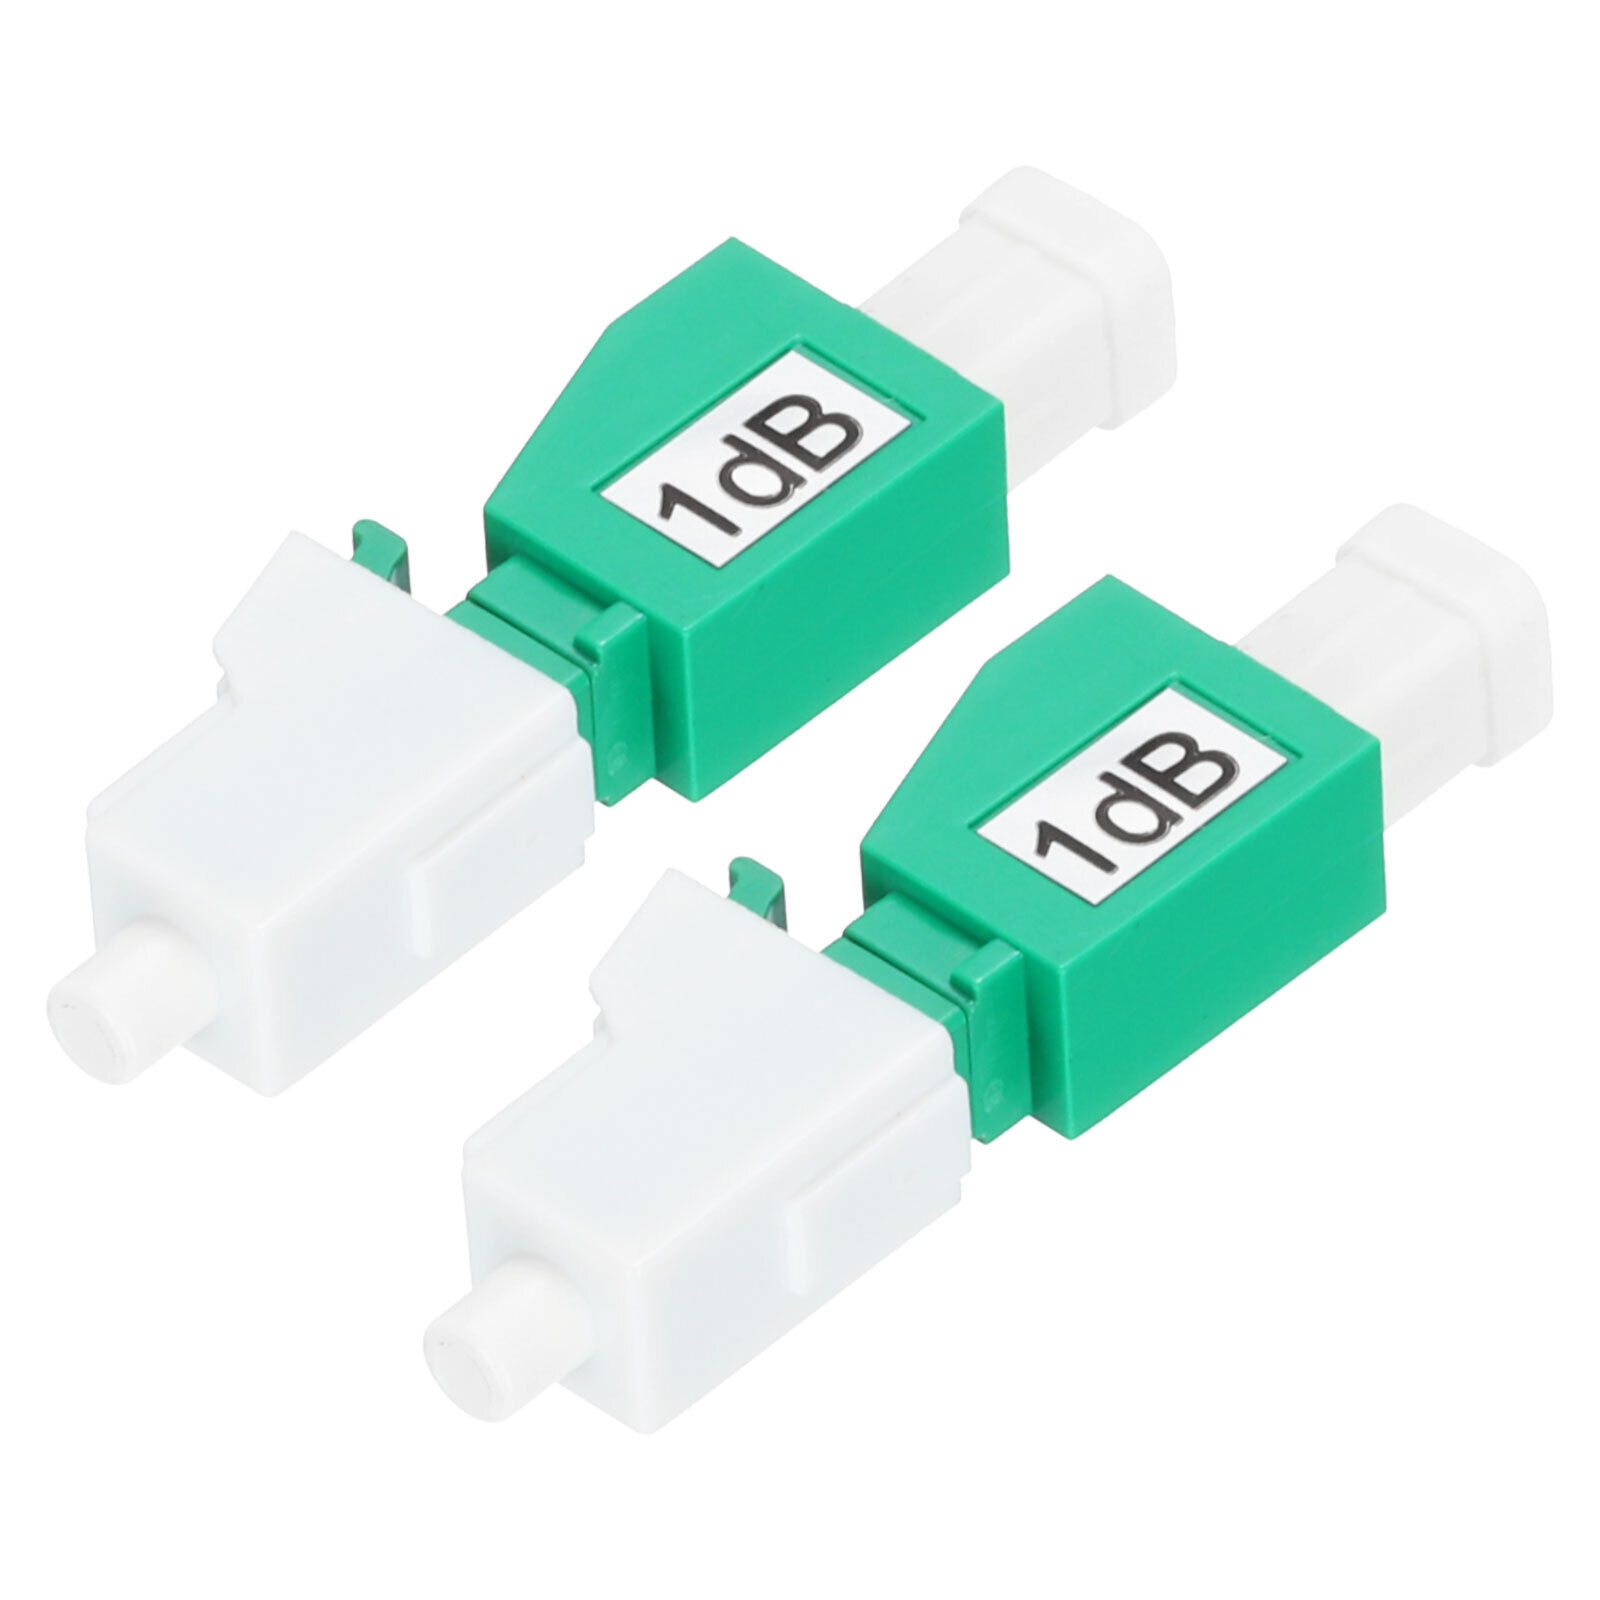 2PCS Fiber Attenuator 1dB LC/APC, Single Mode Fixed Male to Female Attenuator